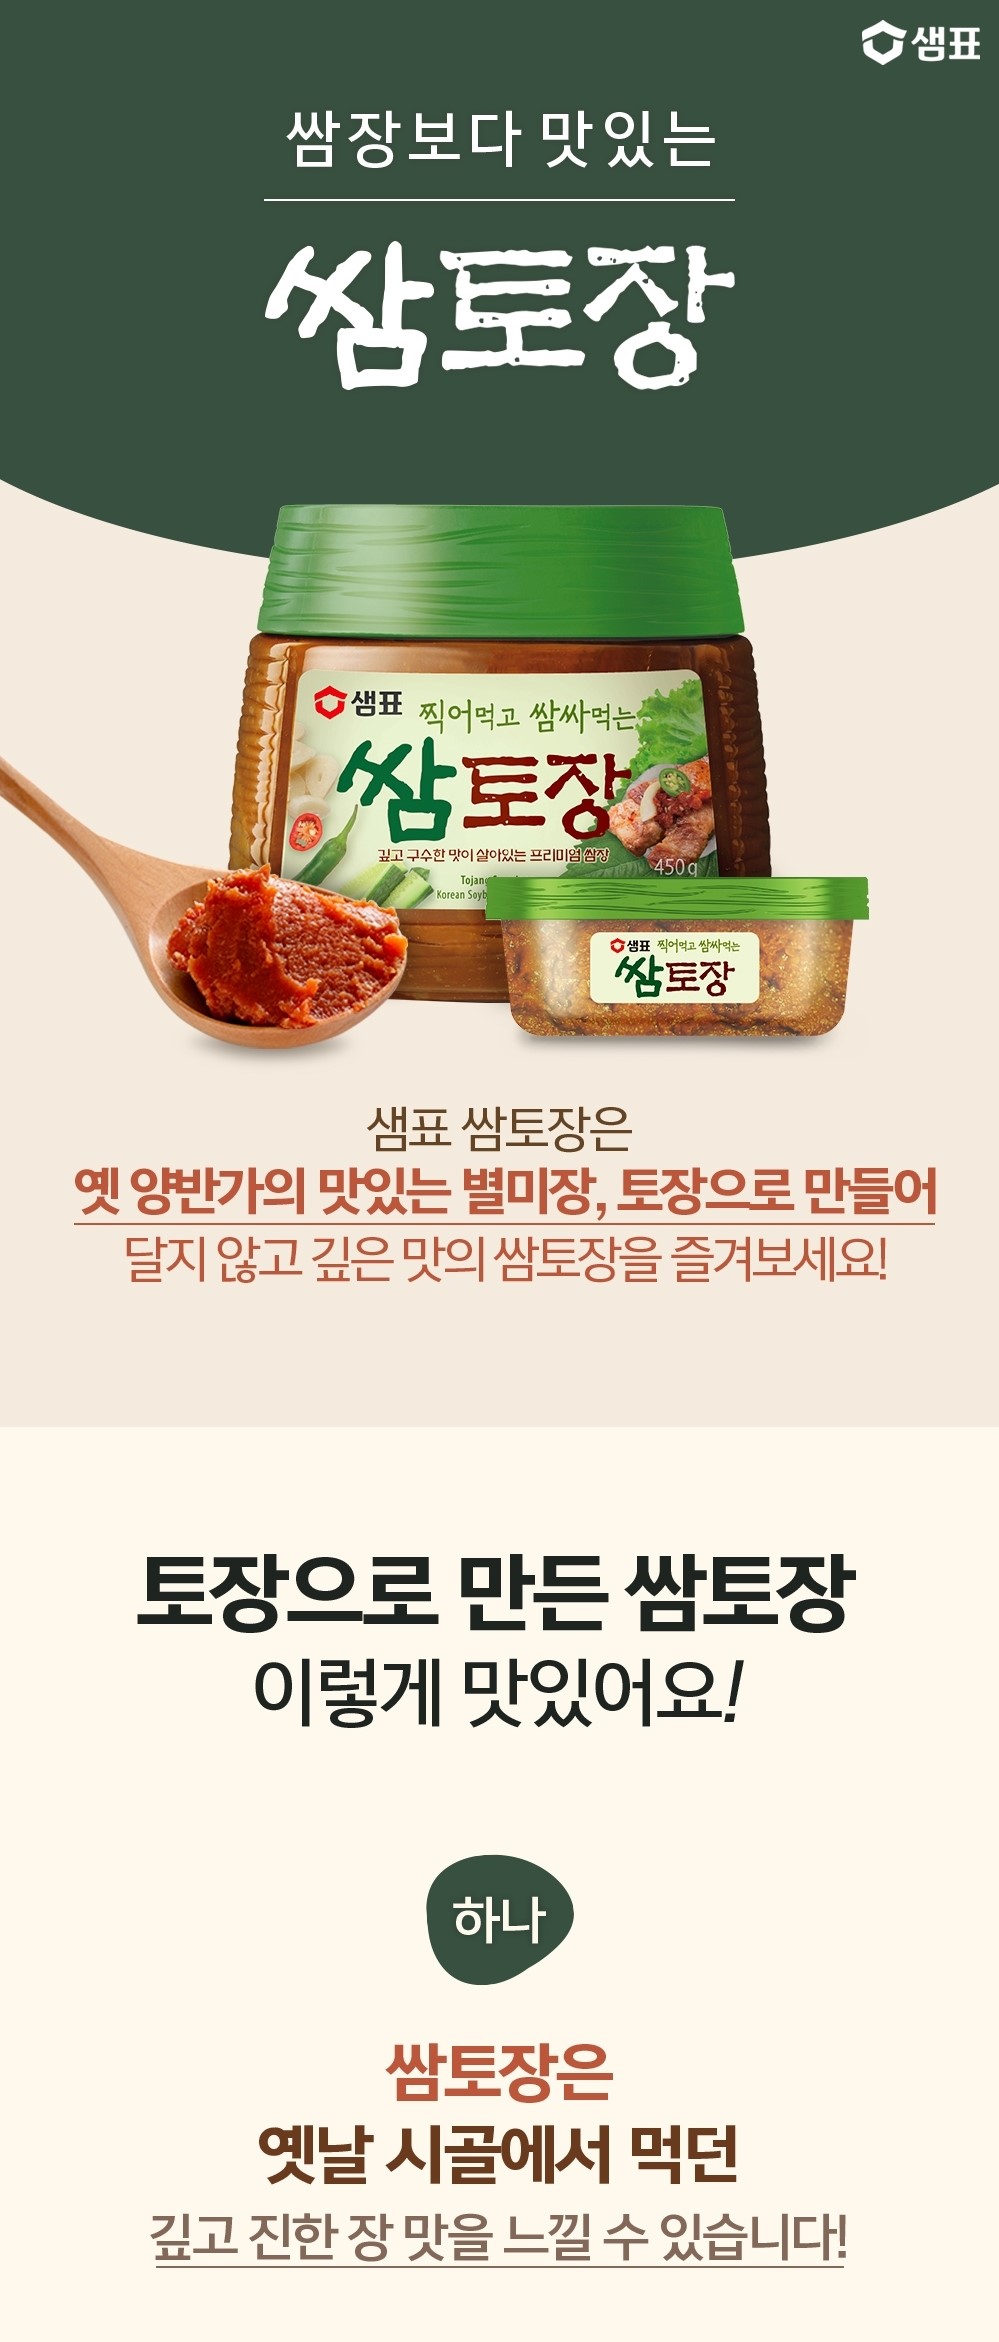 韓國食品-[샘표] 쌈토장 170g